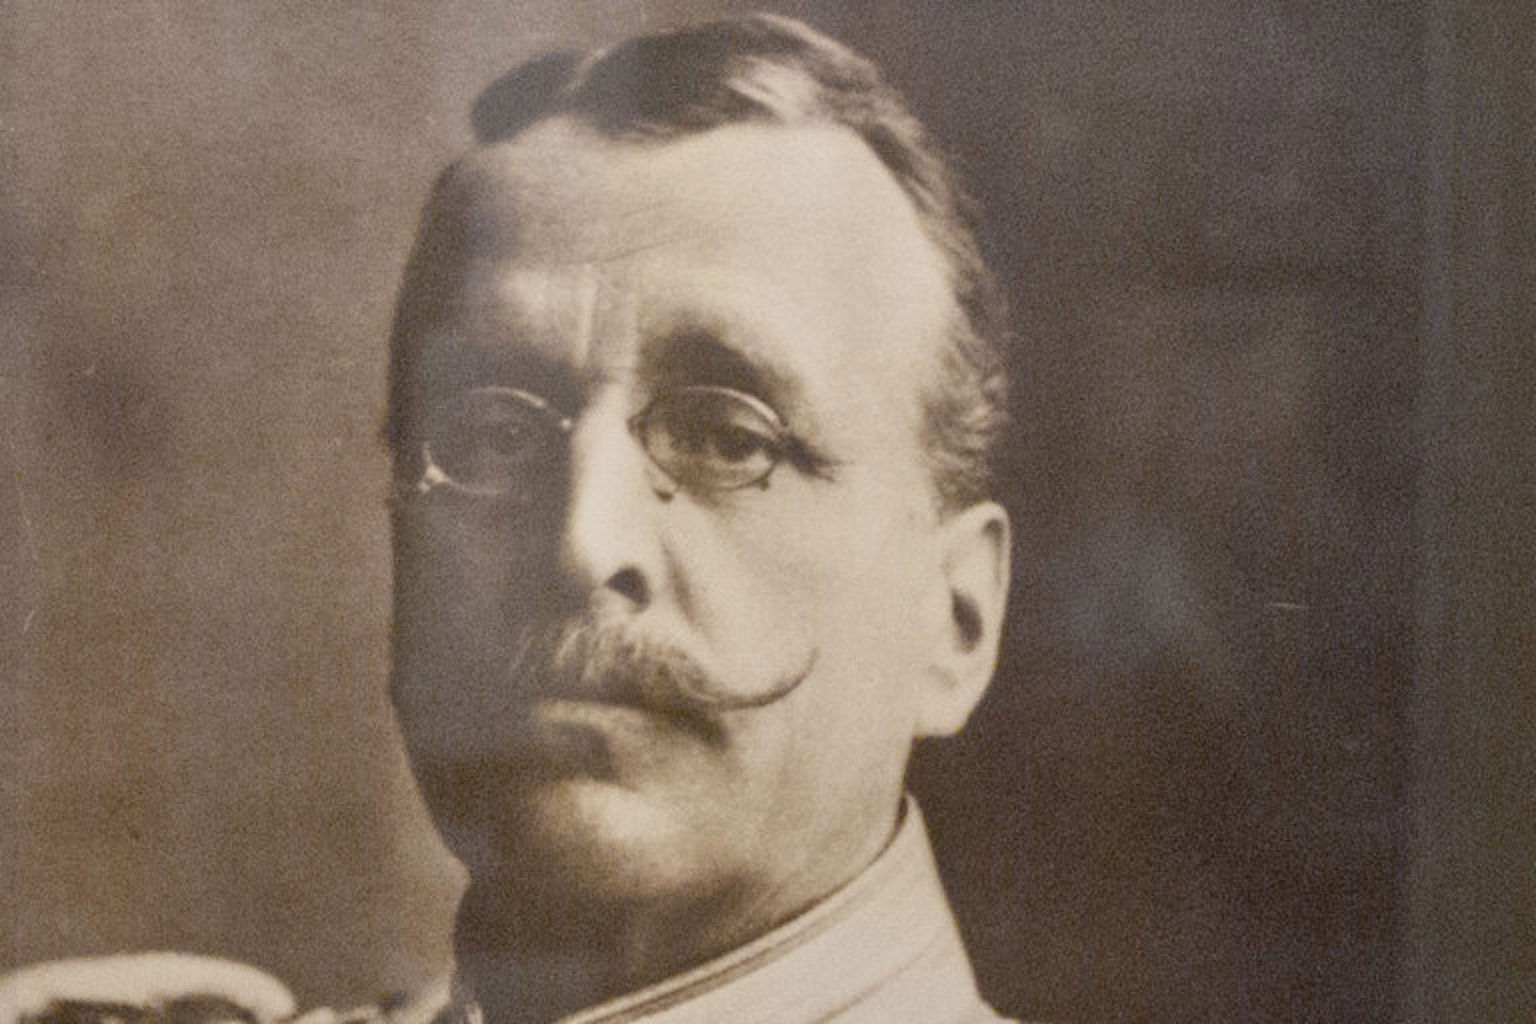 Porträtt av Svenska Kennelklubbens första ordförande, Adolf Patrik Hamilton